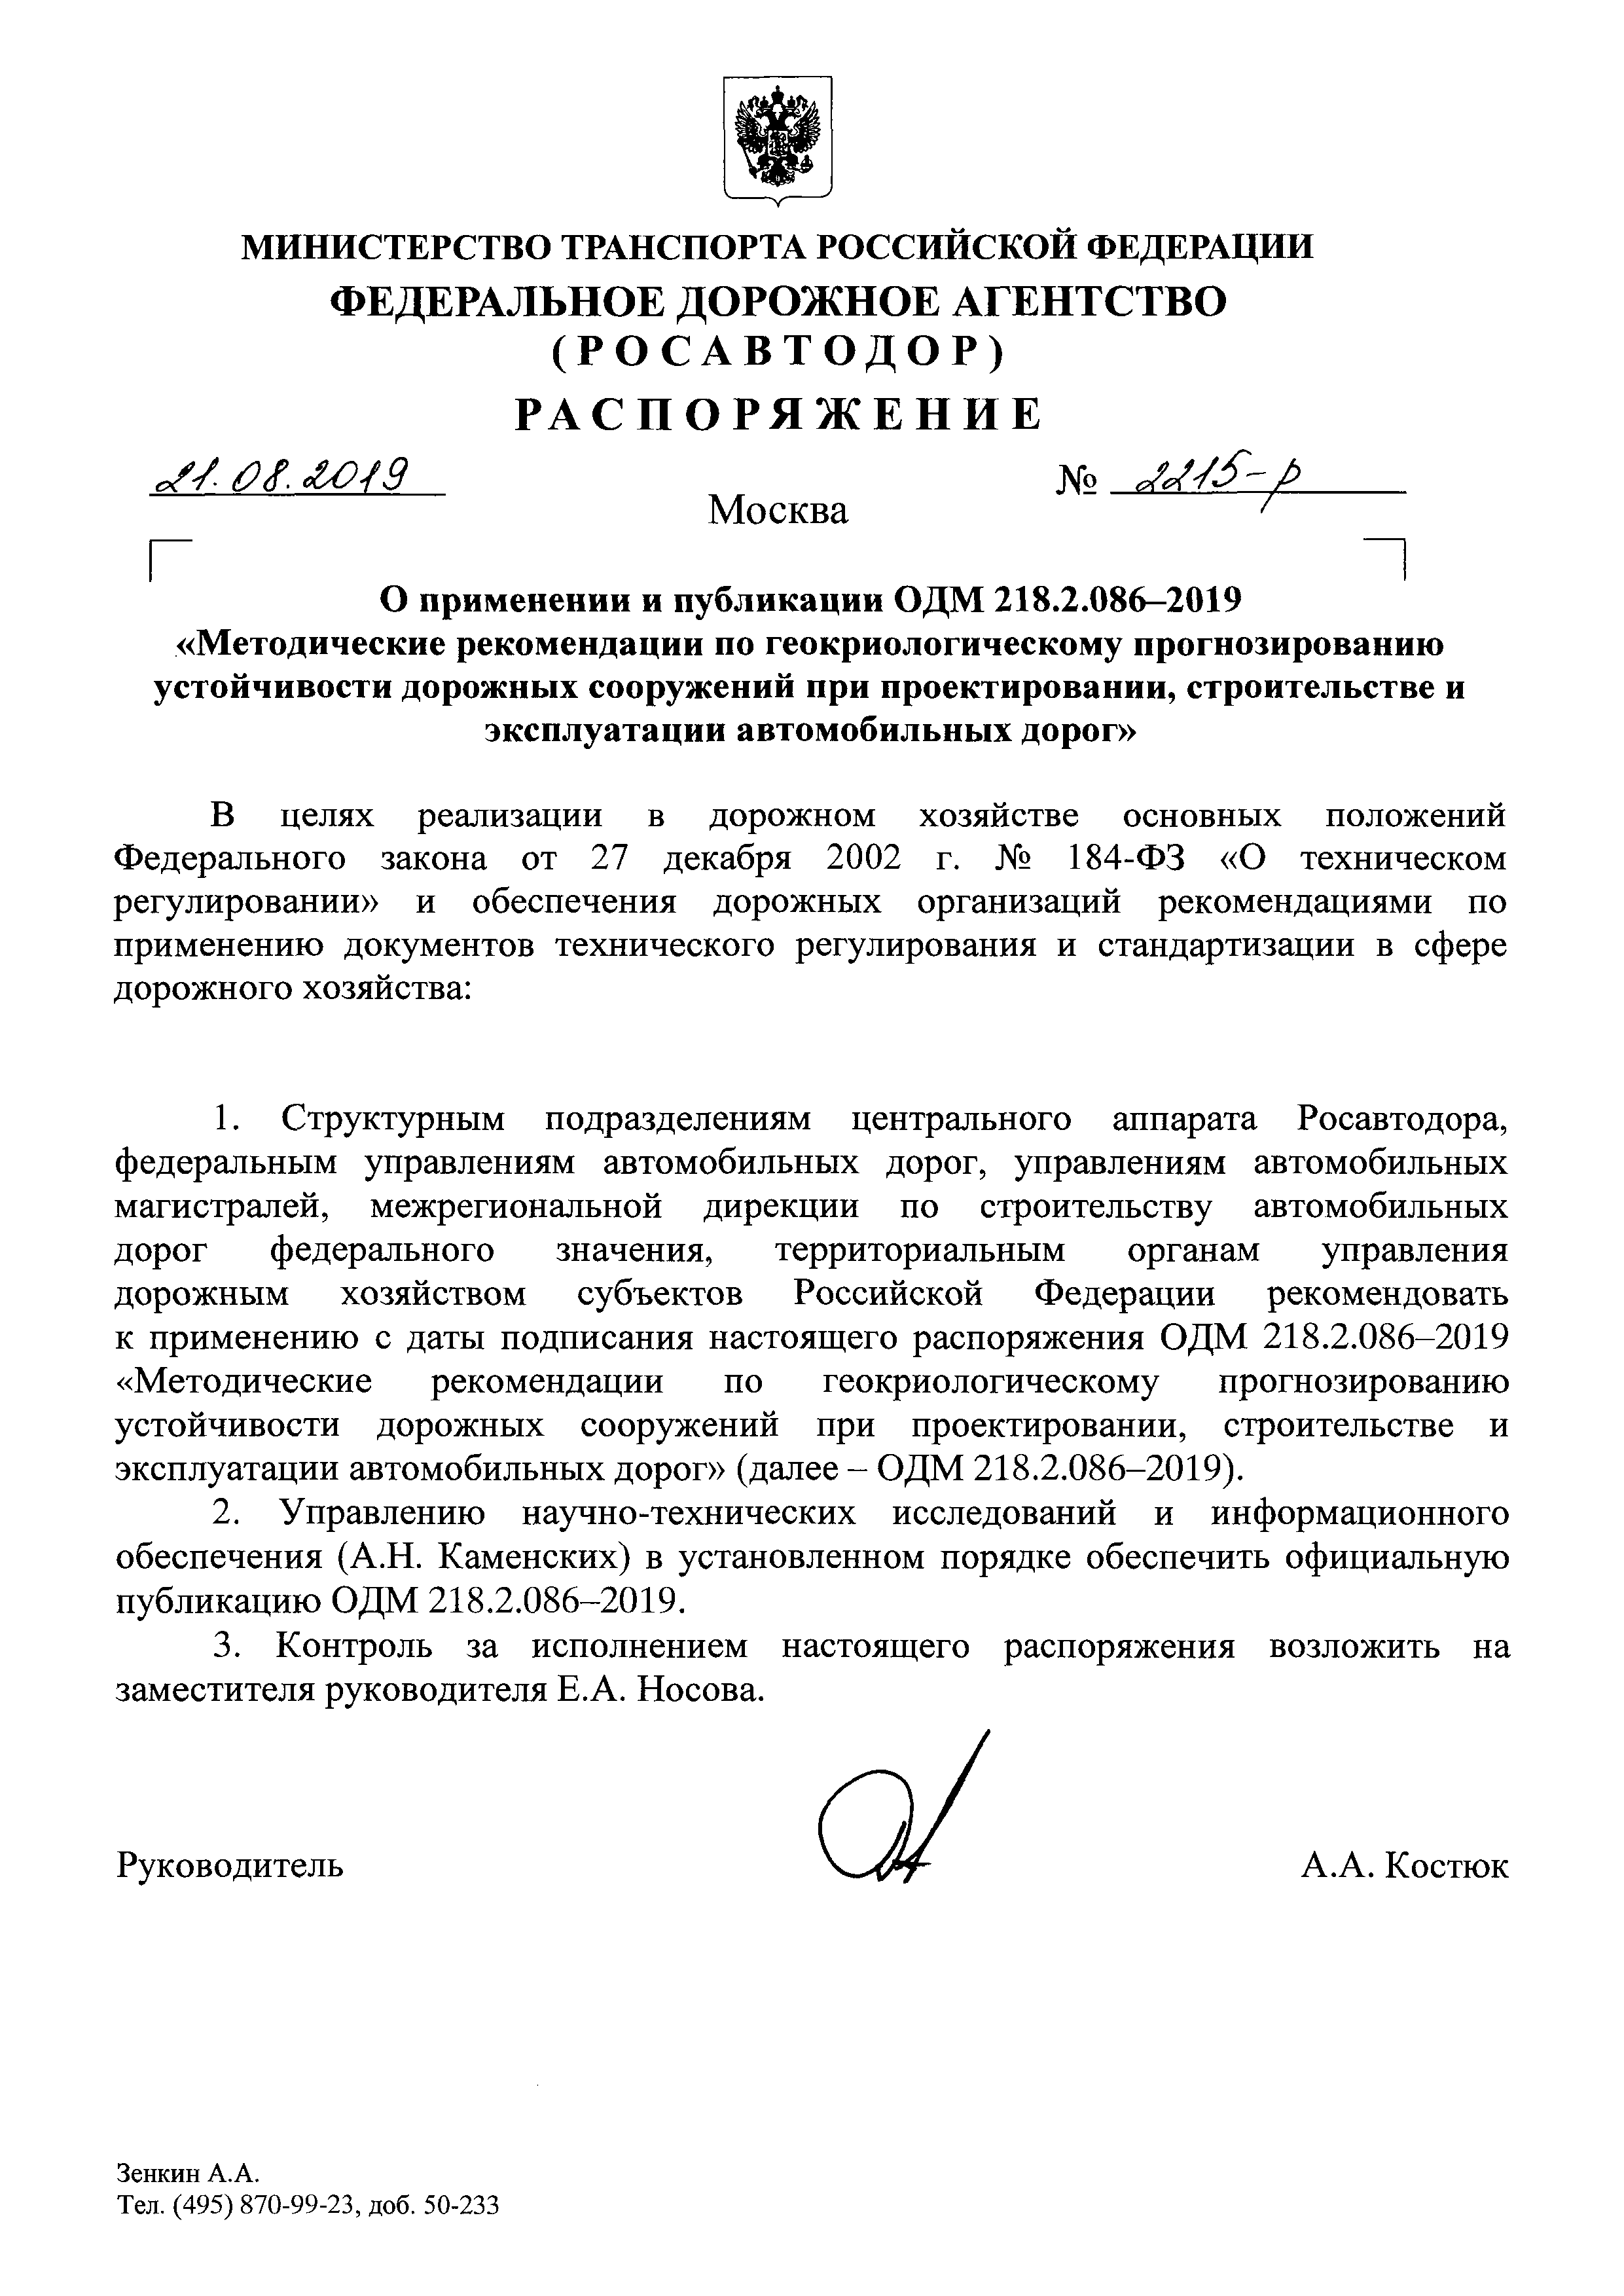 ОДМ 218.2.086-2019